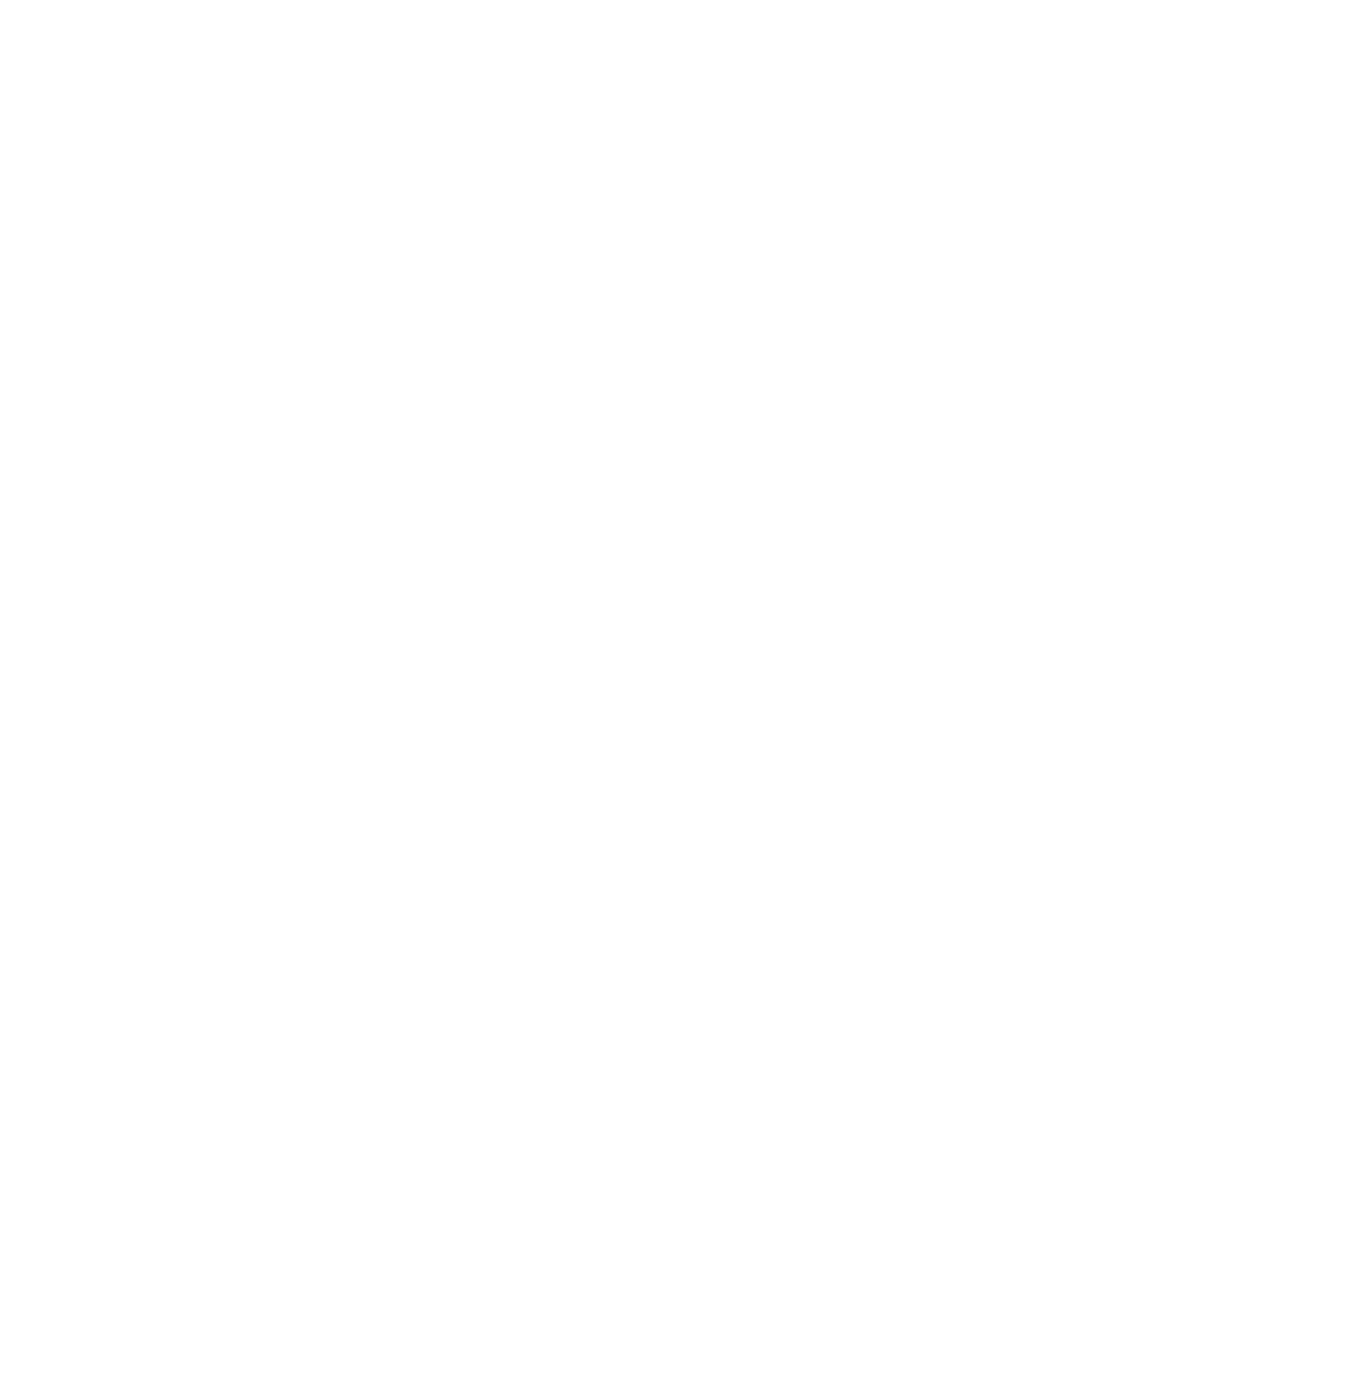 Кирилл Челушкин. Учение Вильгельма Райха. 2020. Холст, графит, смешанная техника. 180 х 180 см